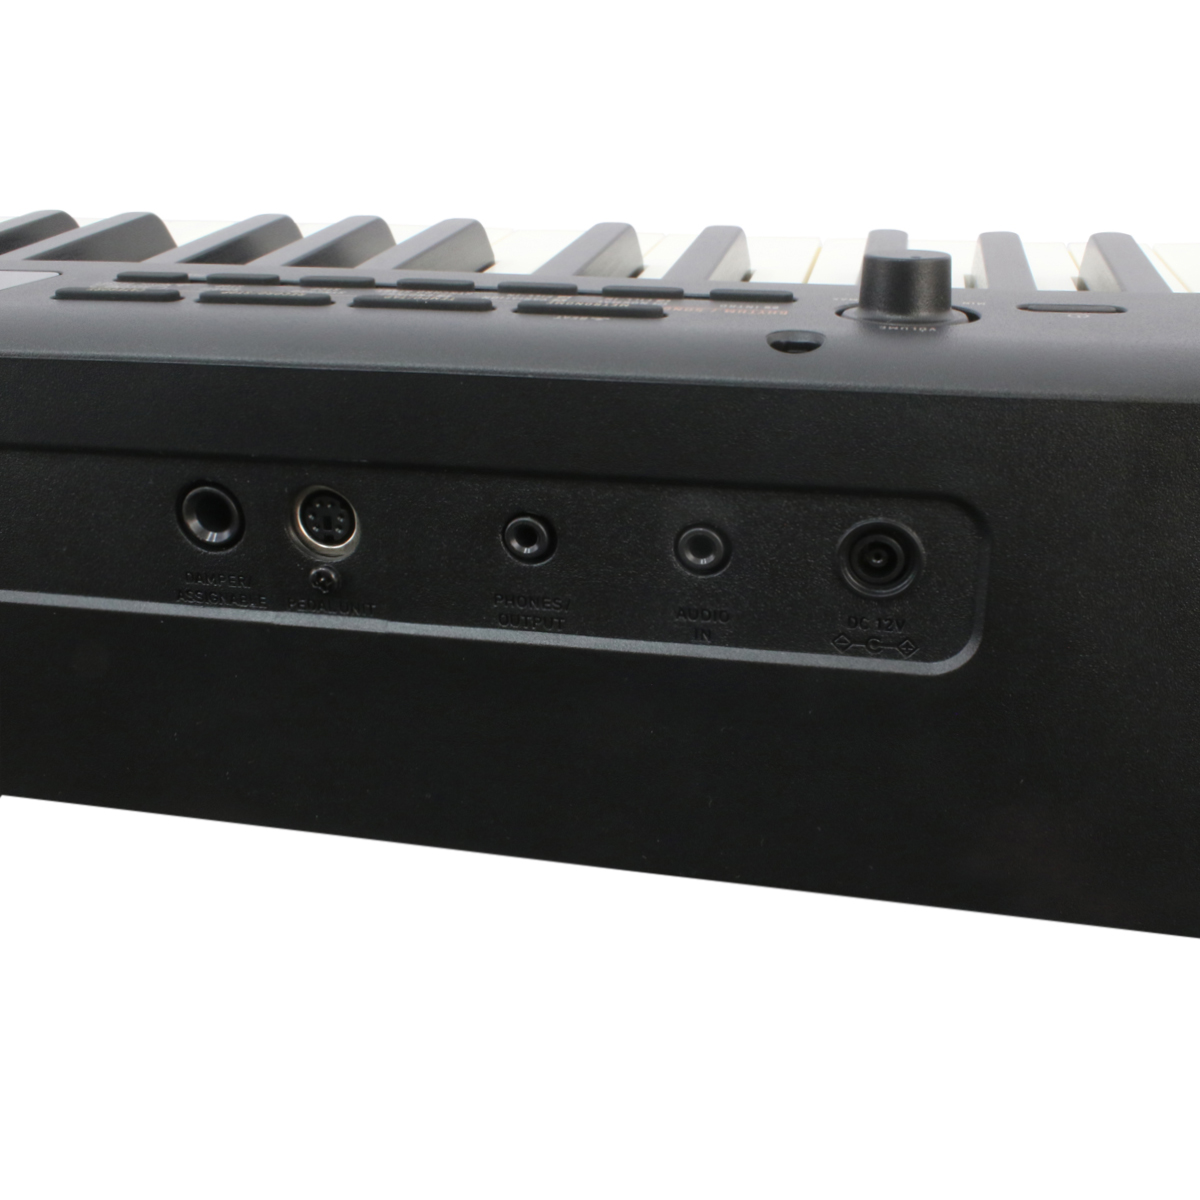 Pack Casio Piano Cdps350 88 Teclas Con Pedal Soporte Y Funda